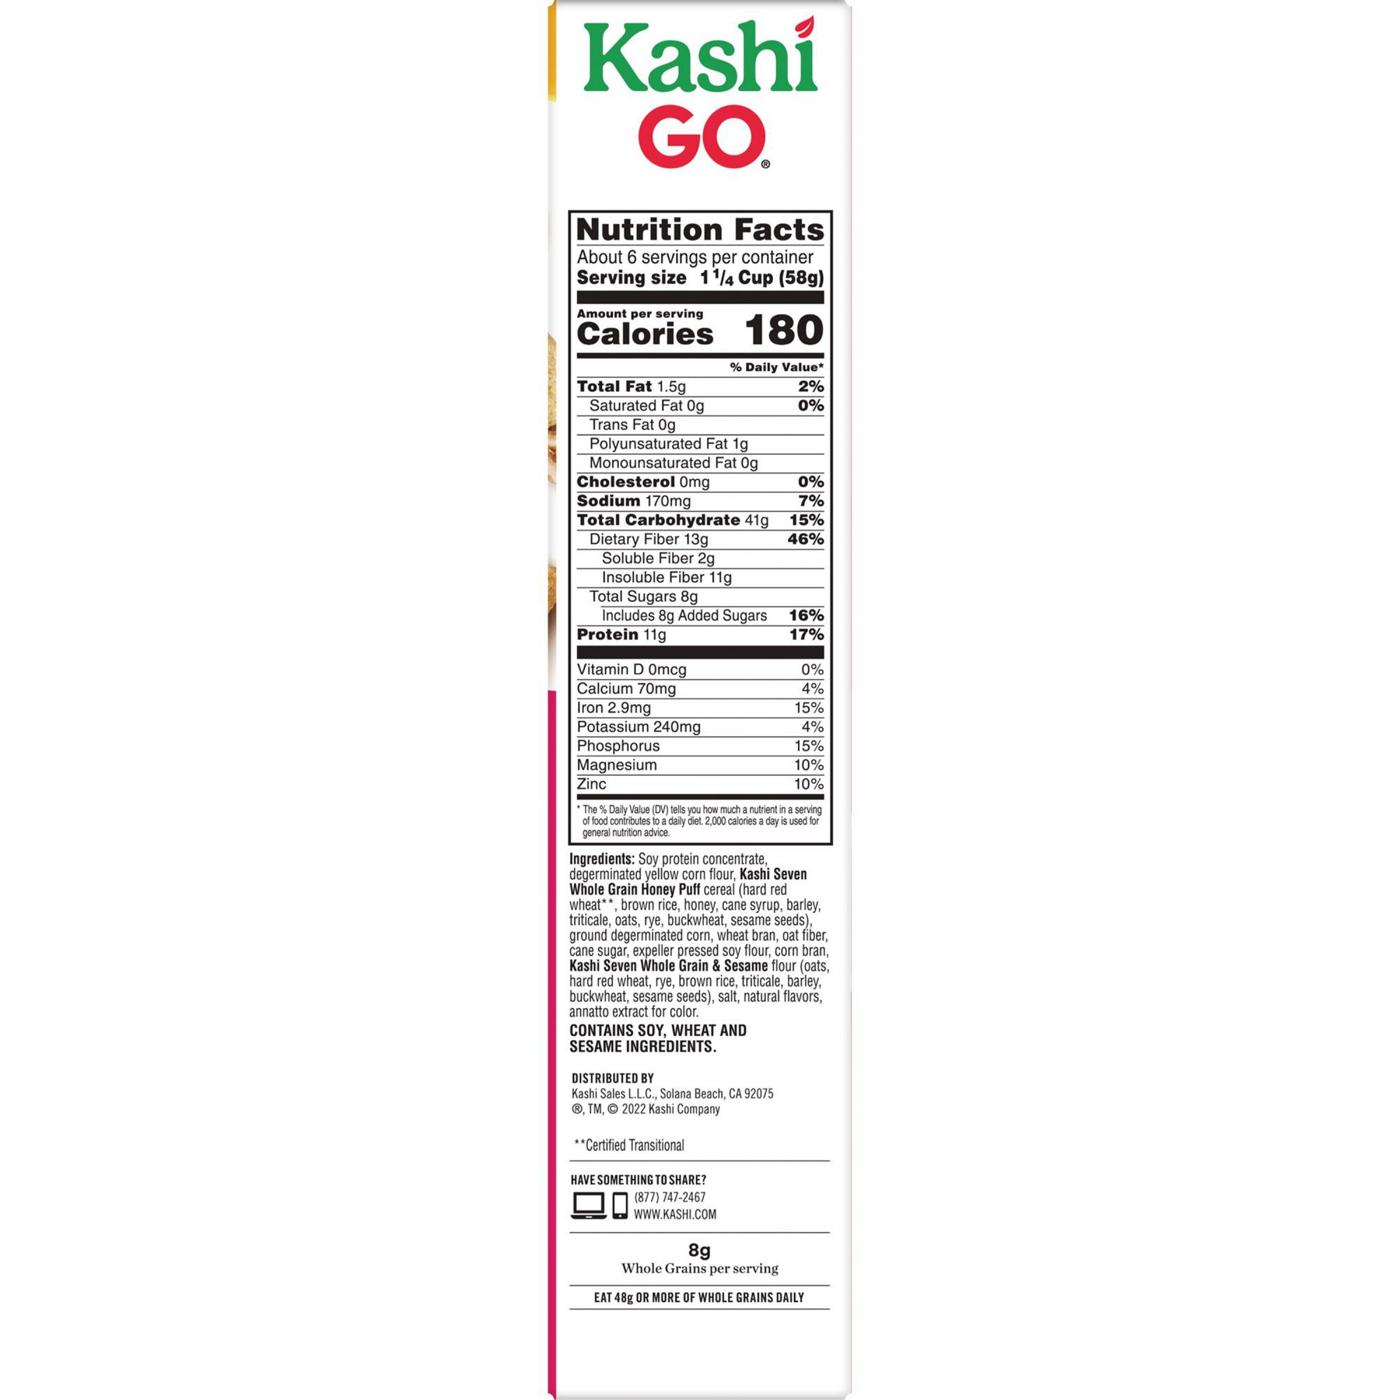 Kashi GO Original Breakfast Cereal; image 7 of 11